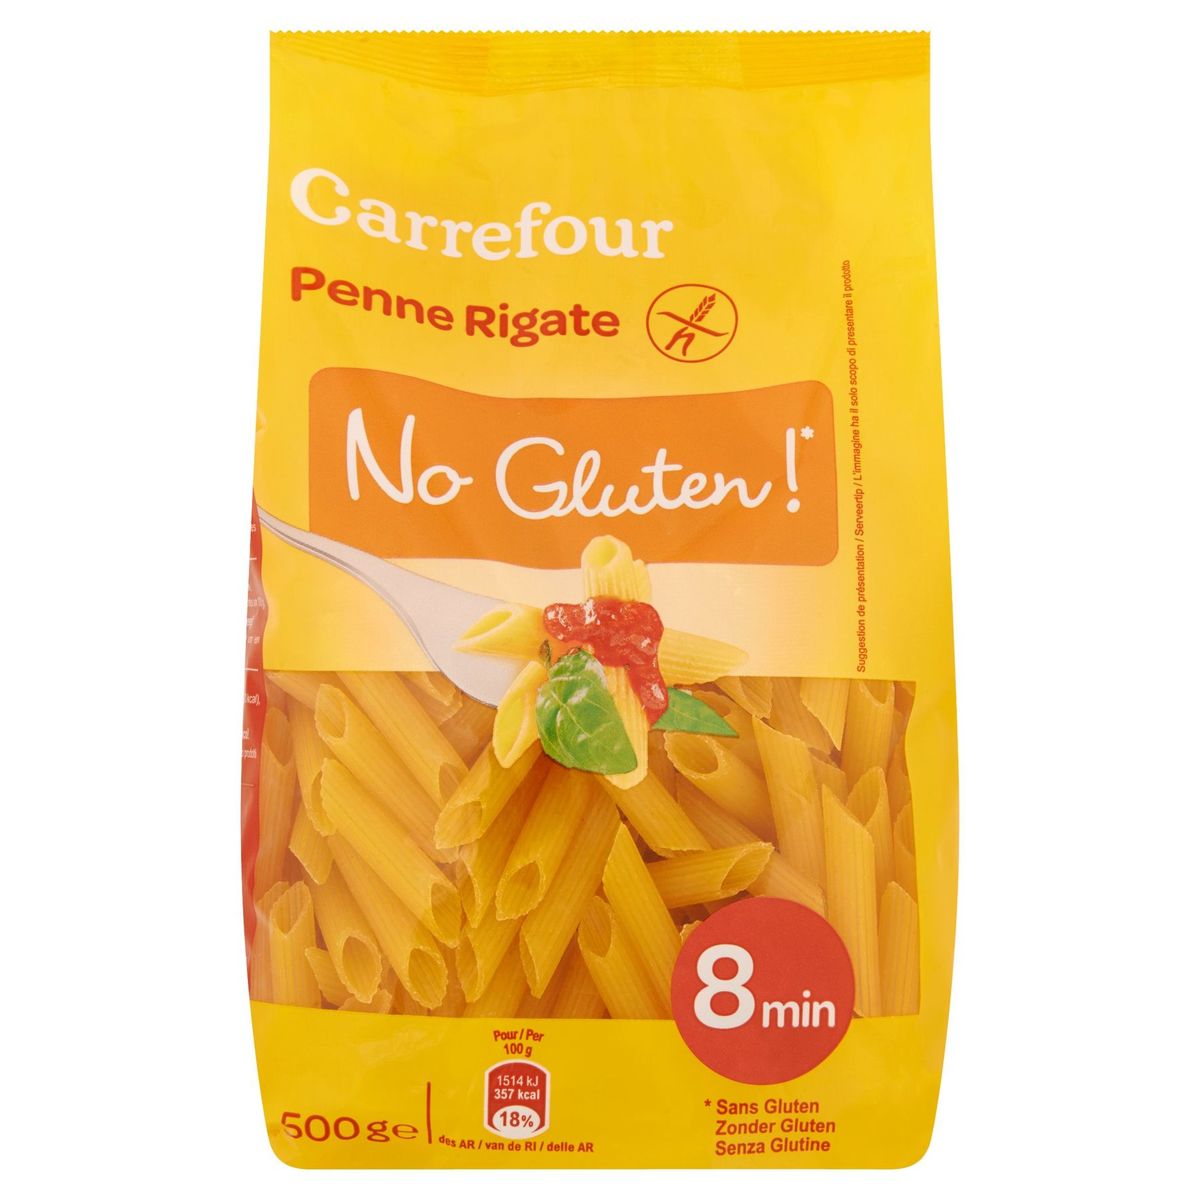 Carrefour Penne Rigate No Gluten! 500 g